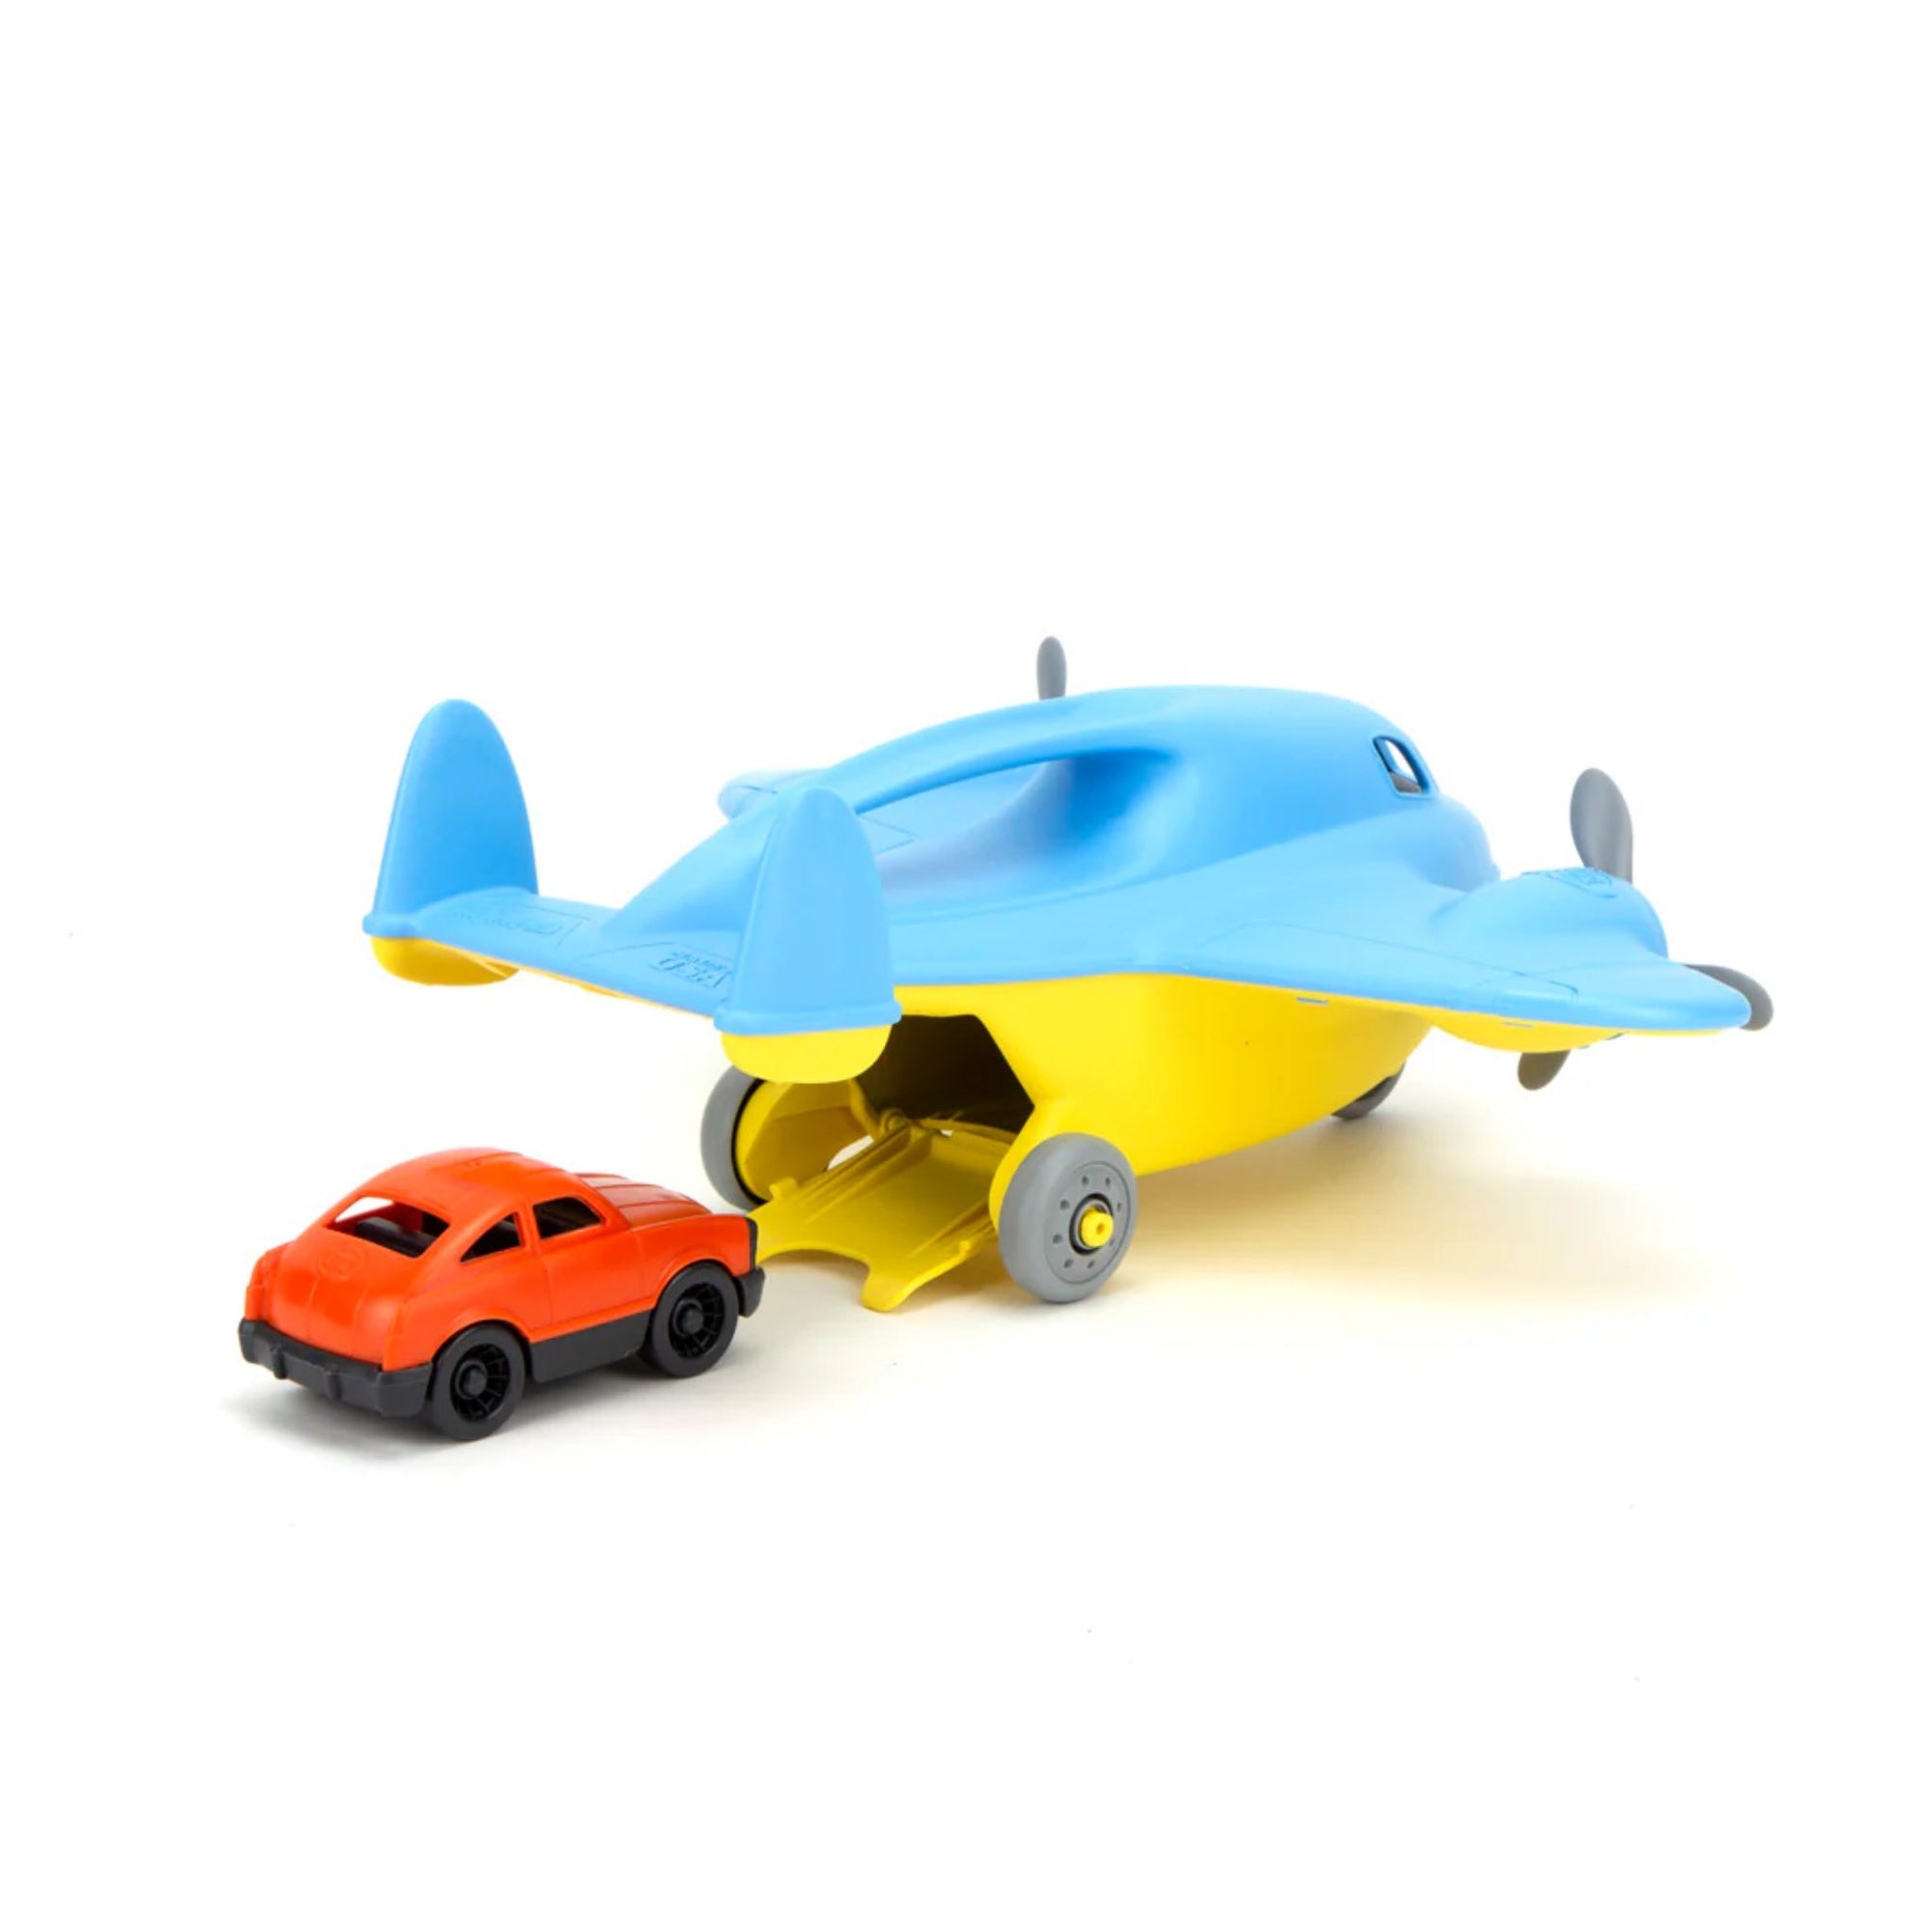 Green Toys Cargo Plane